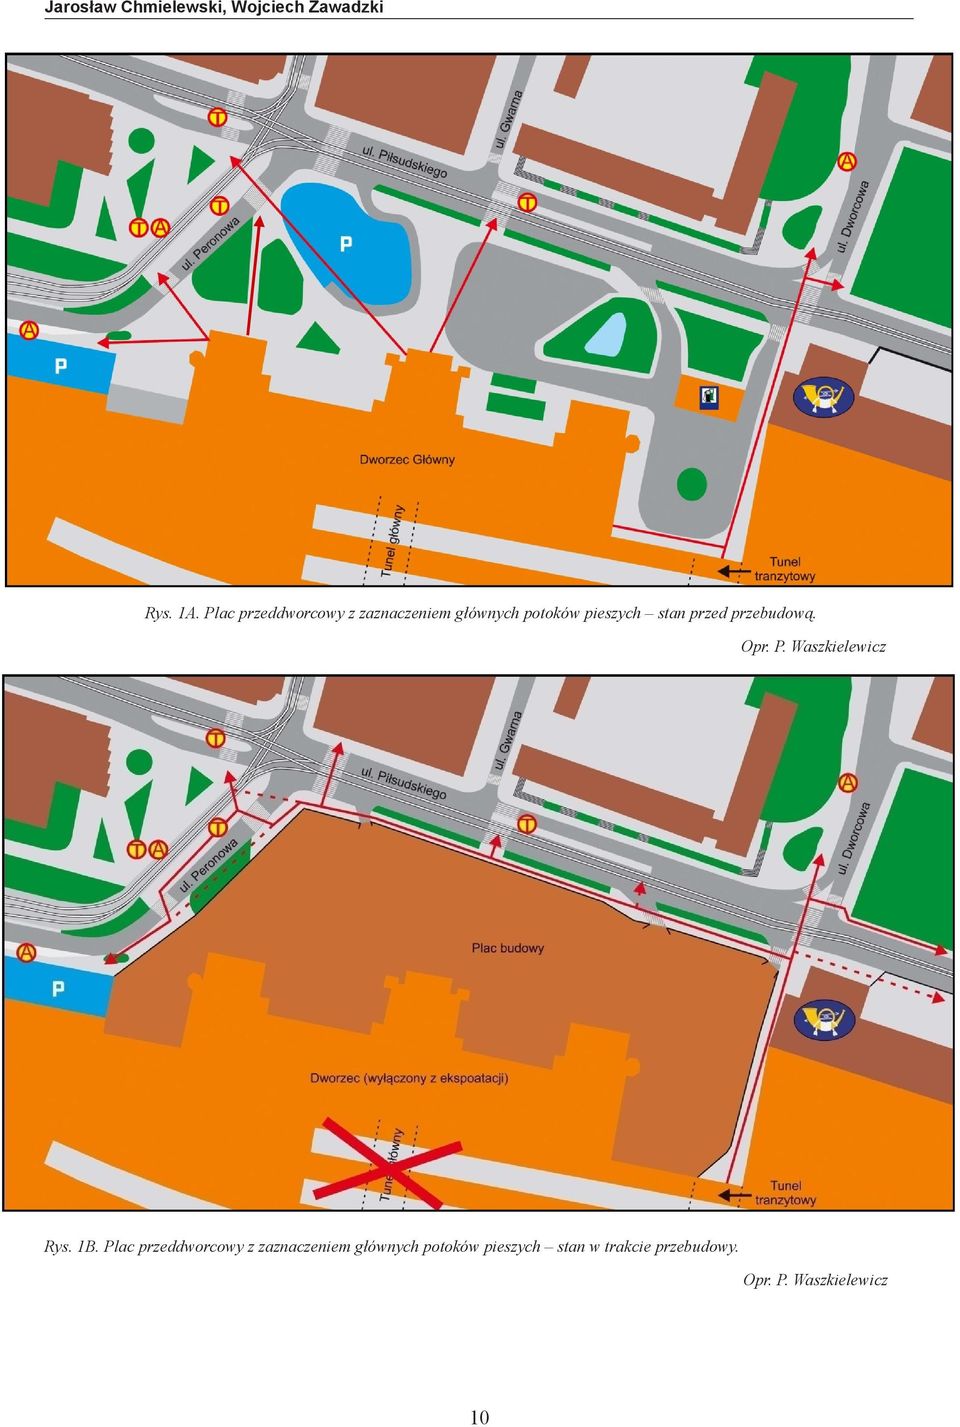 Plac Plac przeddworcowy z zaznaczeniem z zaznaczeniem głównych potoków pieszych głównych stan potoków w trakcie przebudowy. pieszych stan w trakcie Rys. przebudowy. 1B.